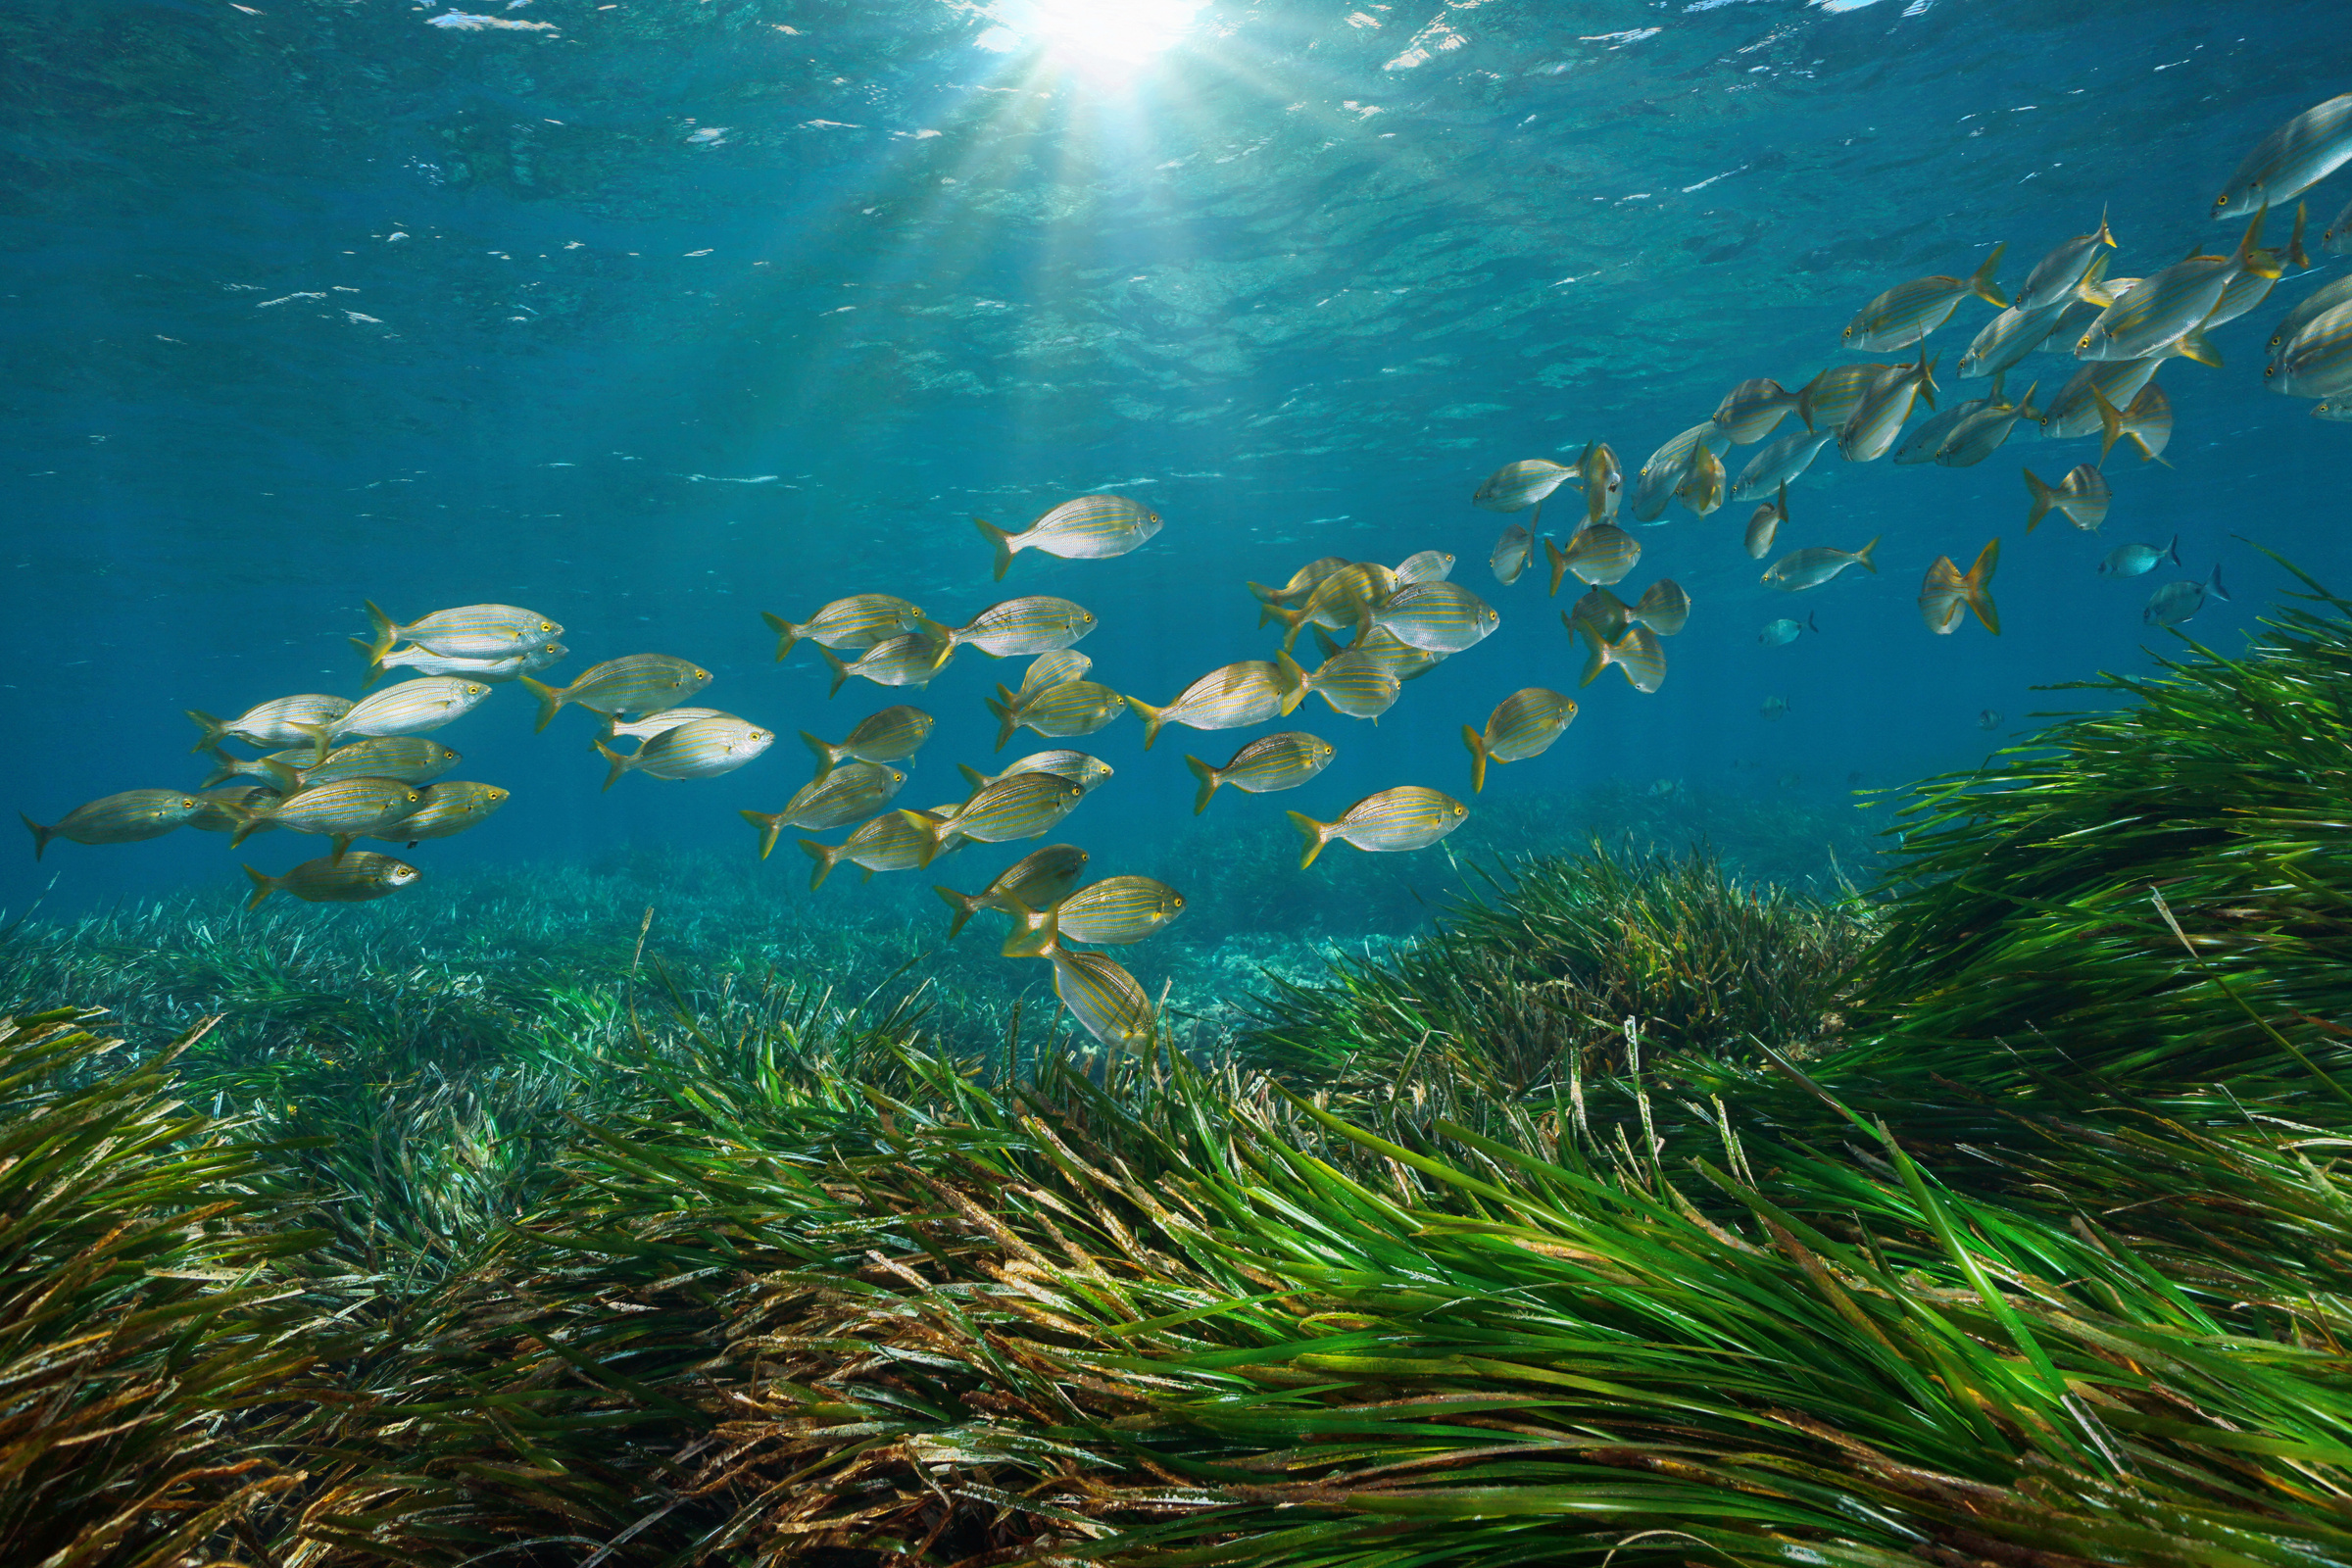 Mediterranean sea fish with seagrass underwater